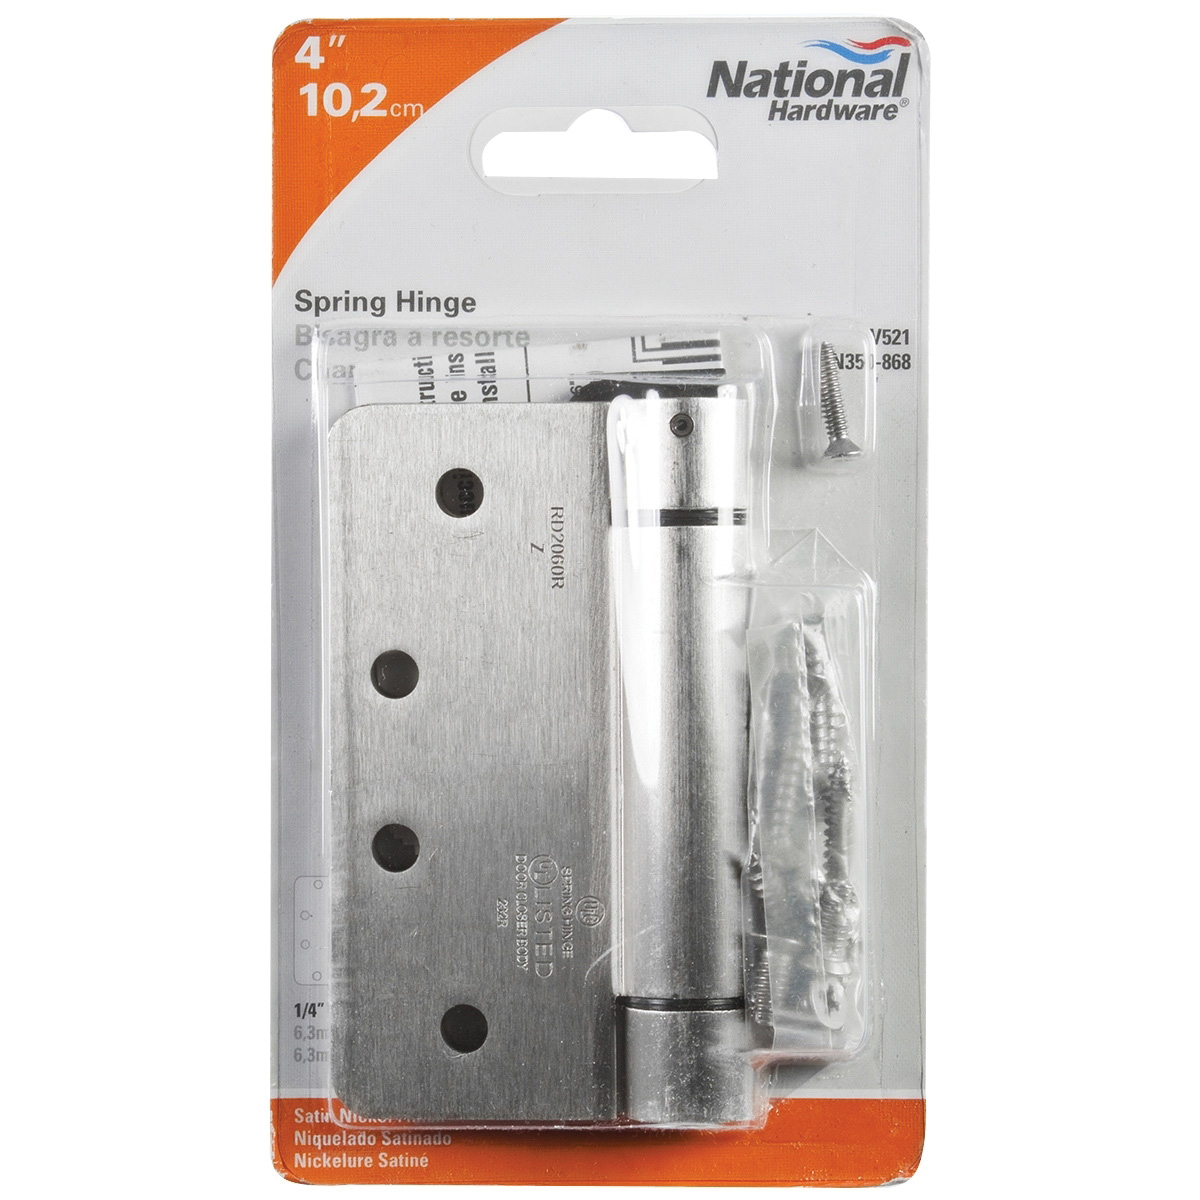 N350-868 Spring Hinge, Steel, Satin Nickel, 37 lb